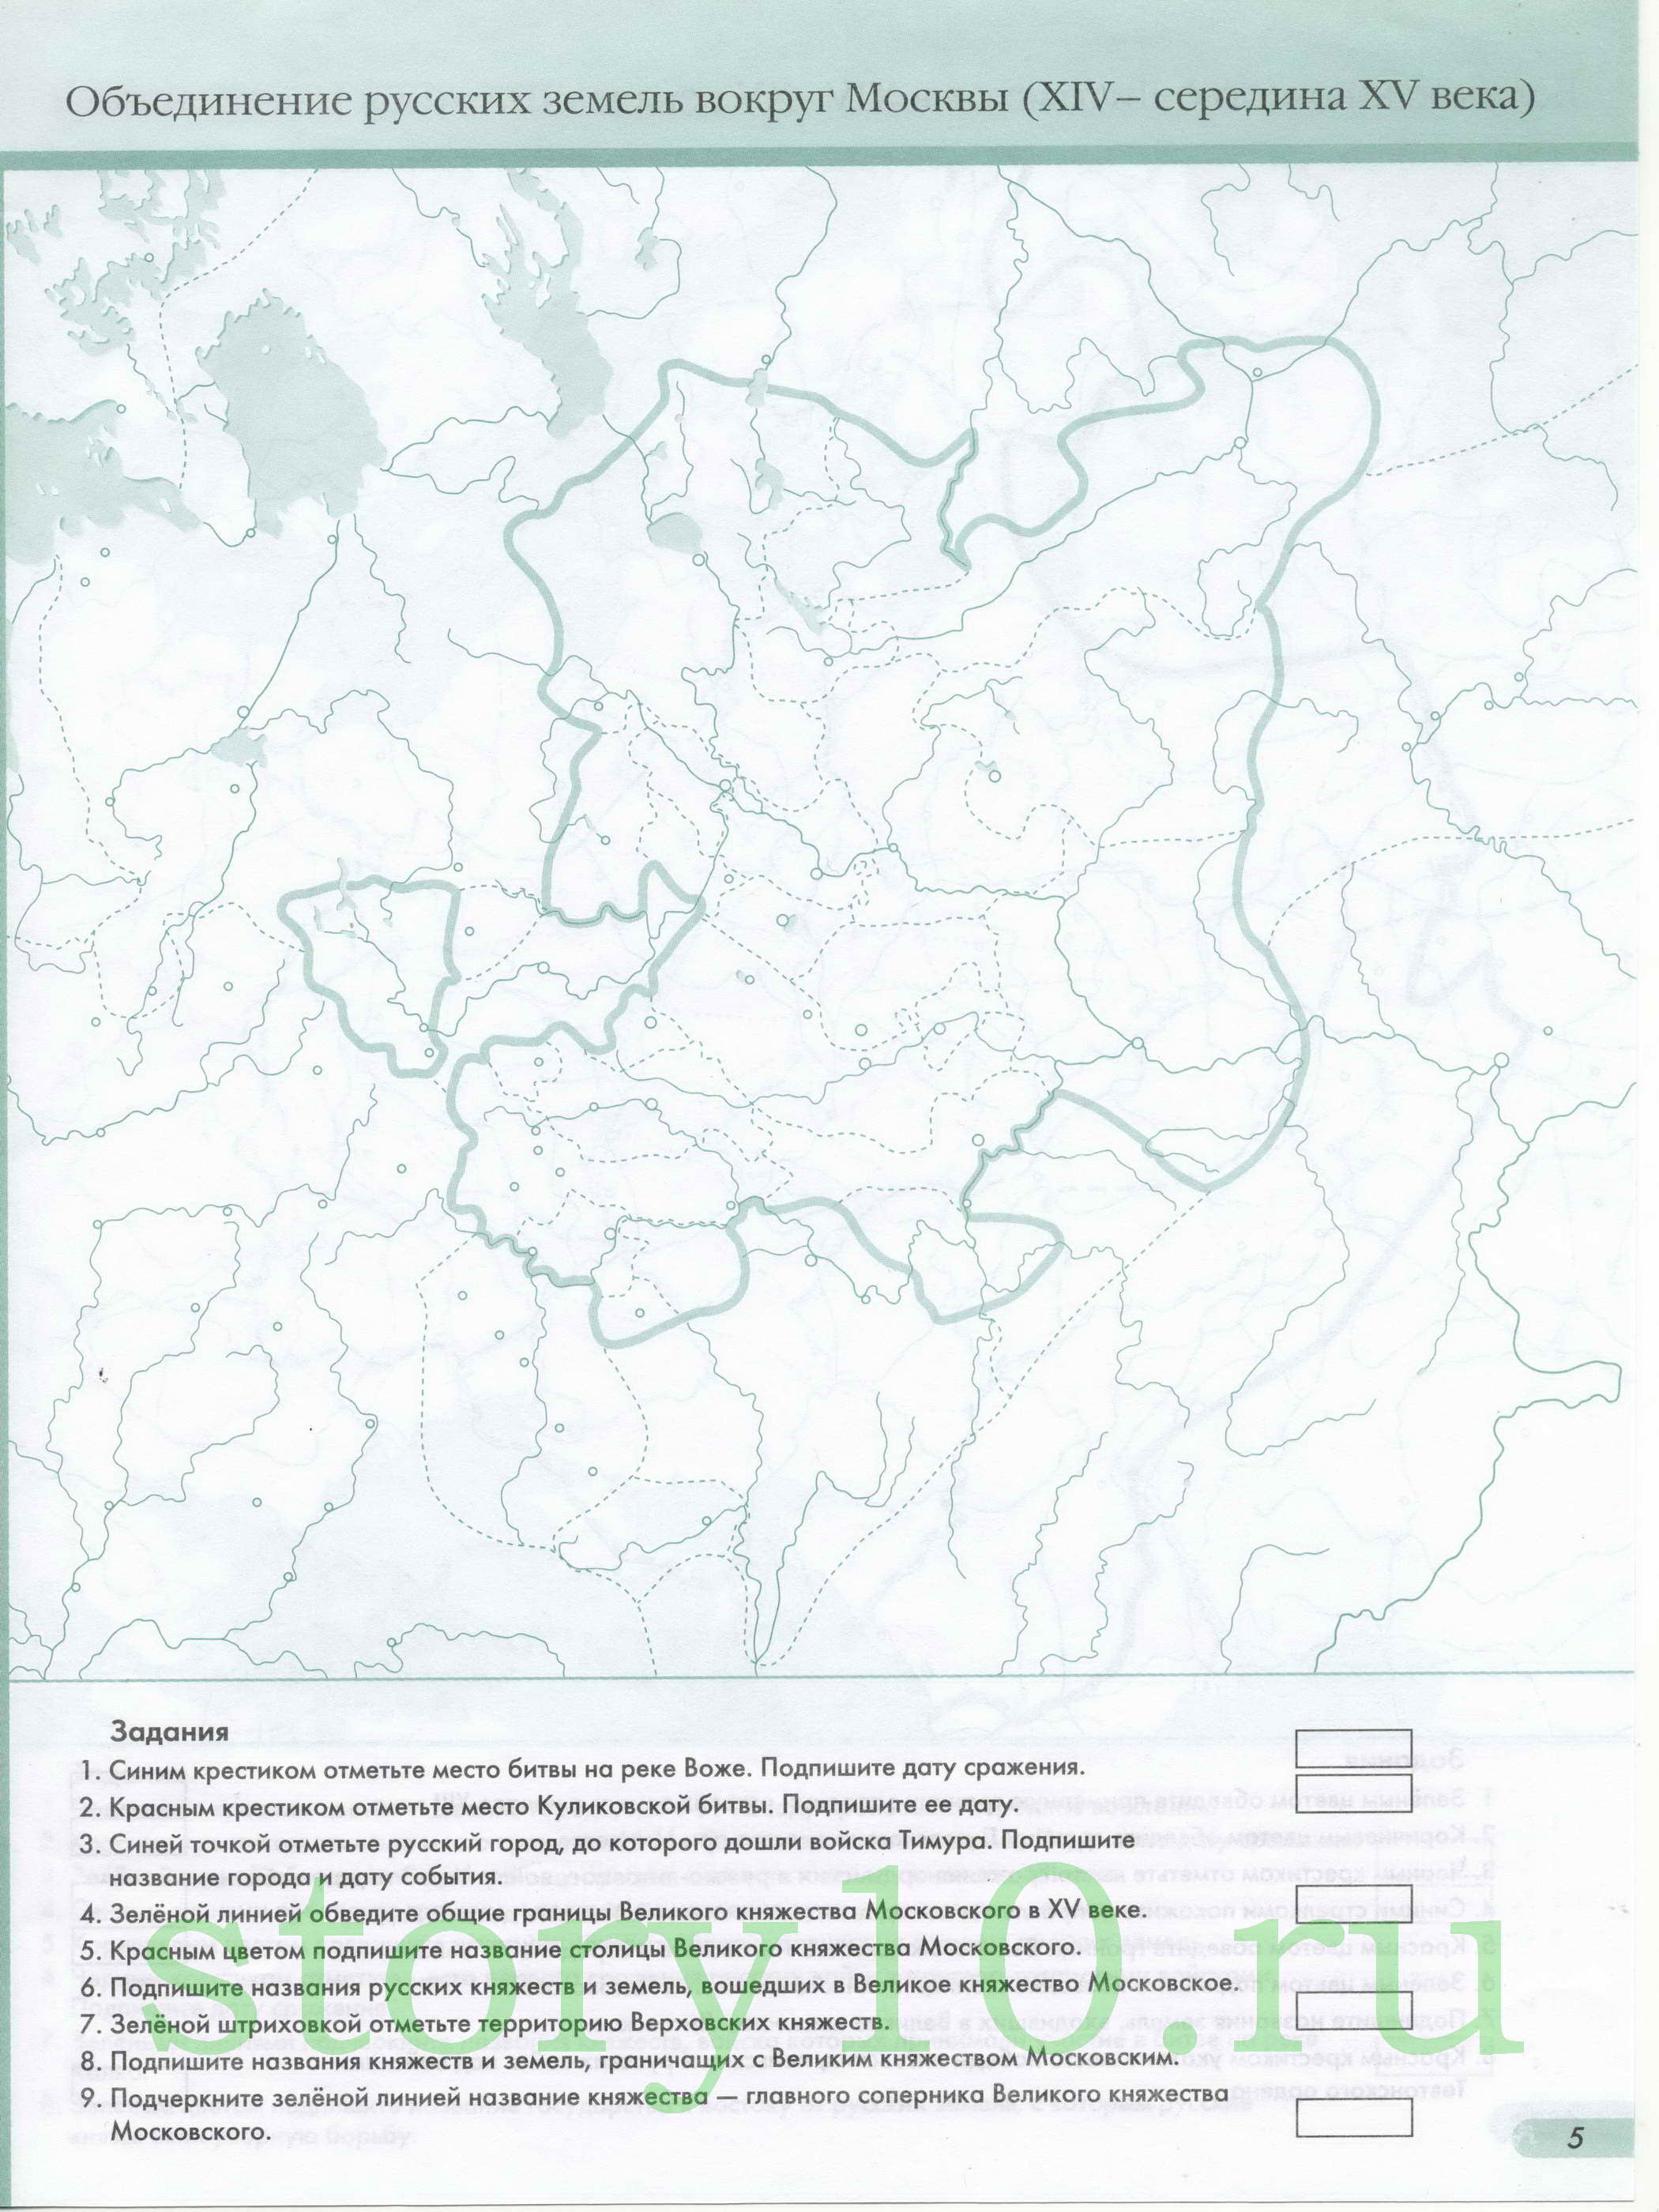 Контурная карта по истории - объединение русских земель вокруг Москвы, A0 - 